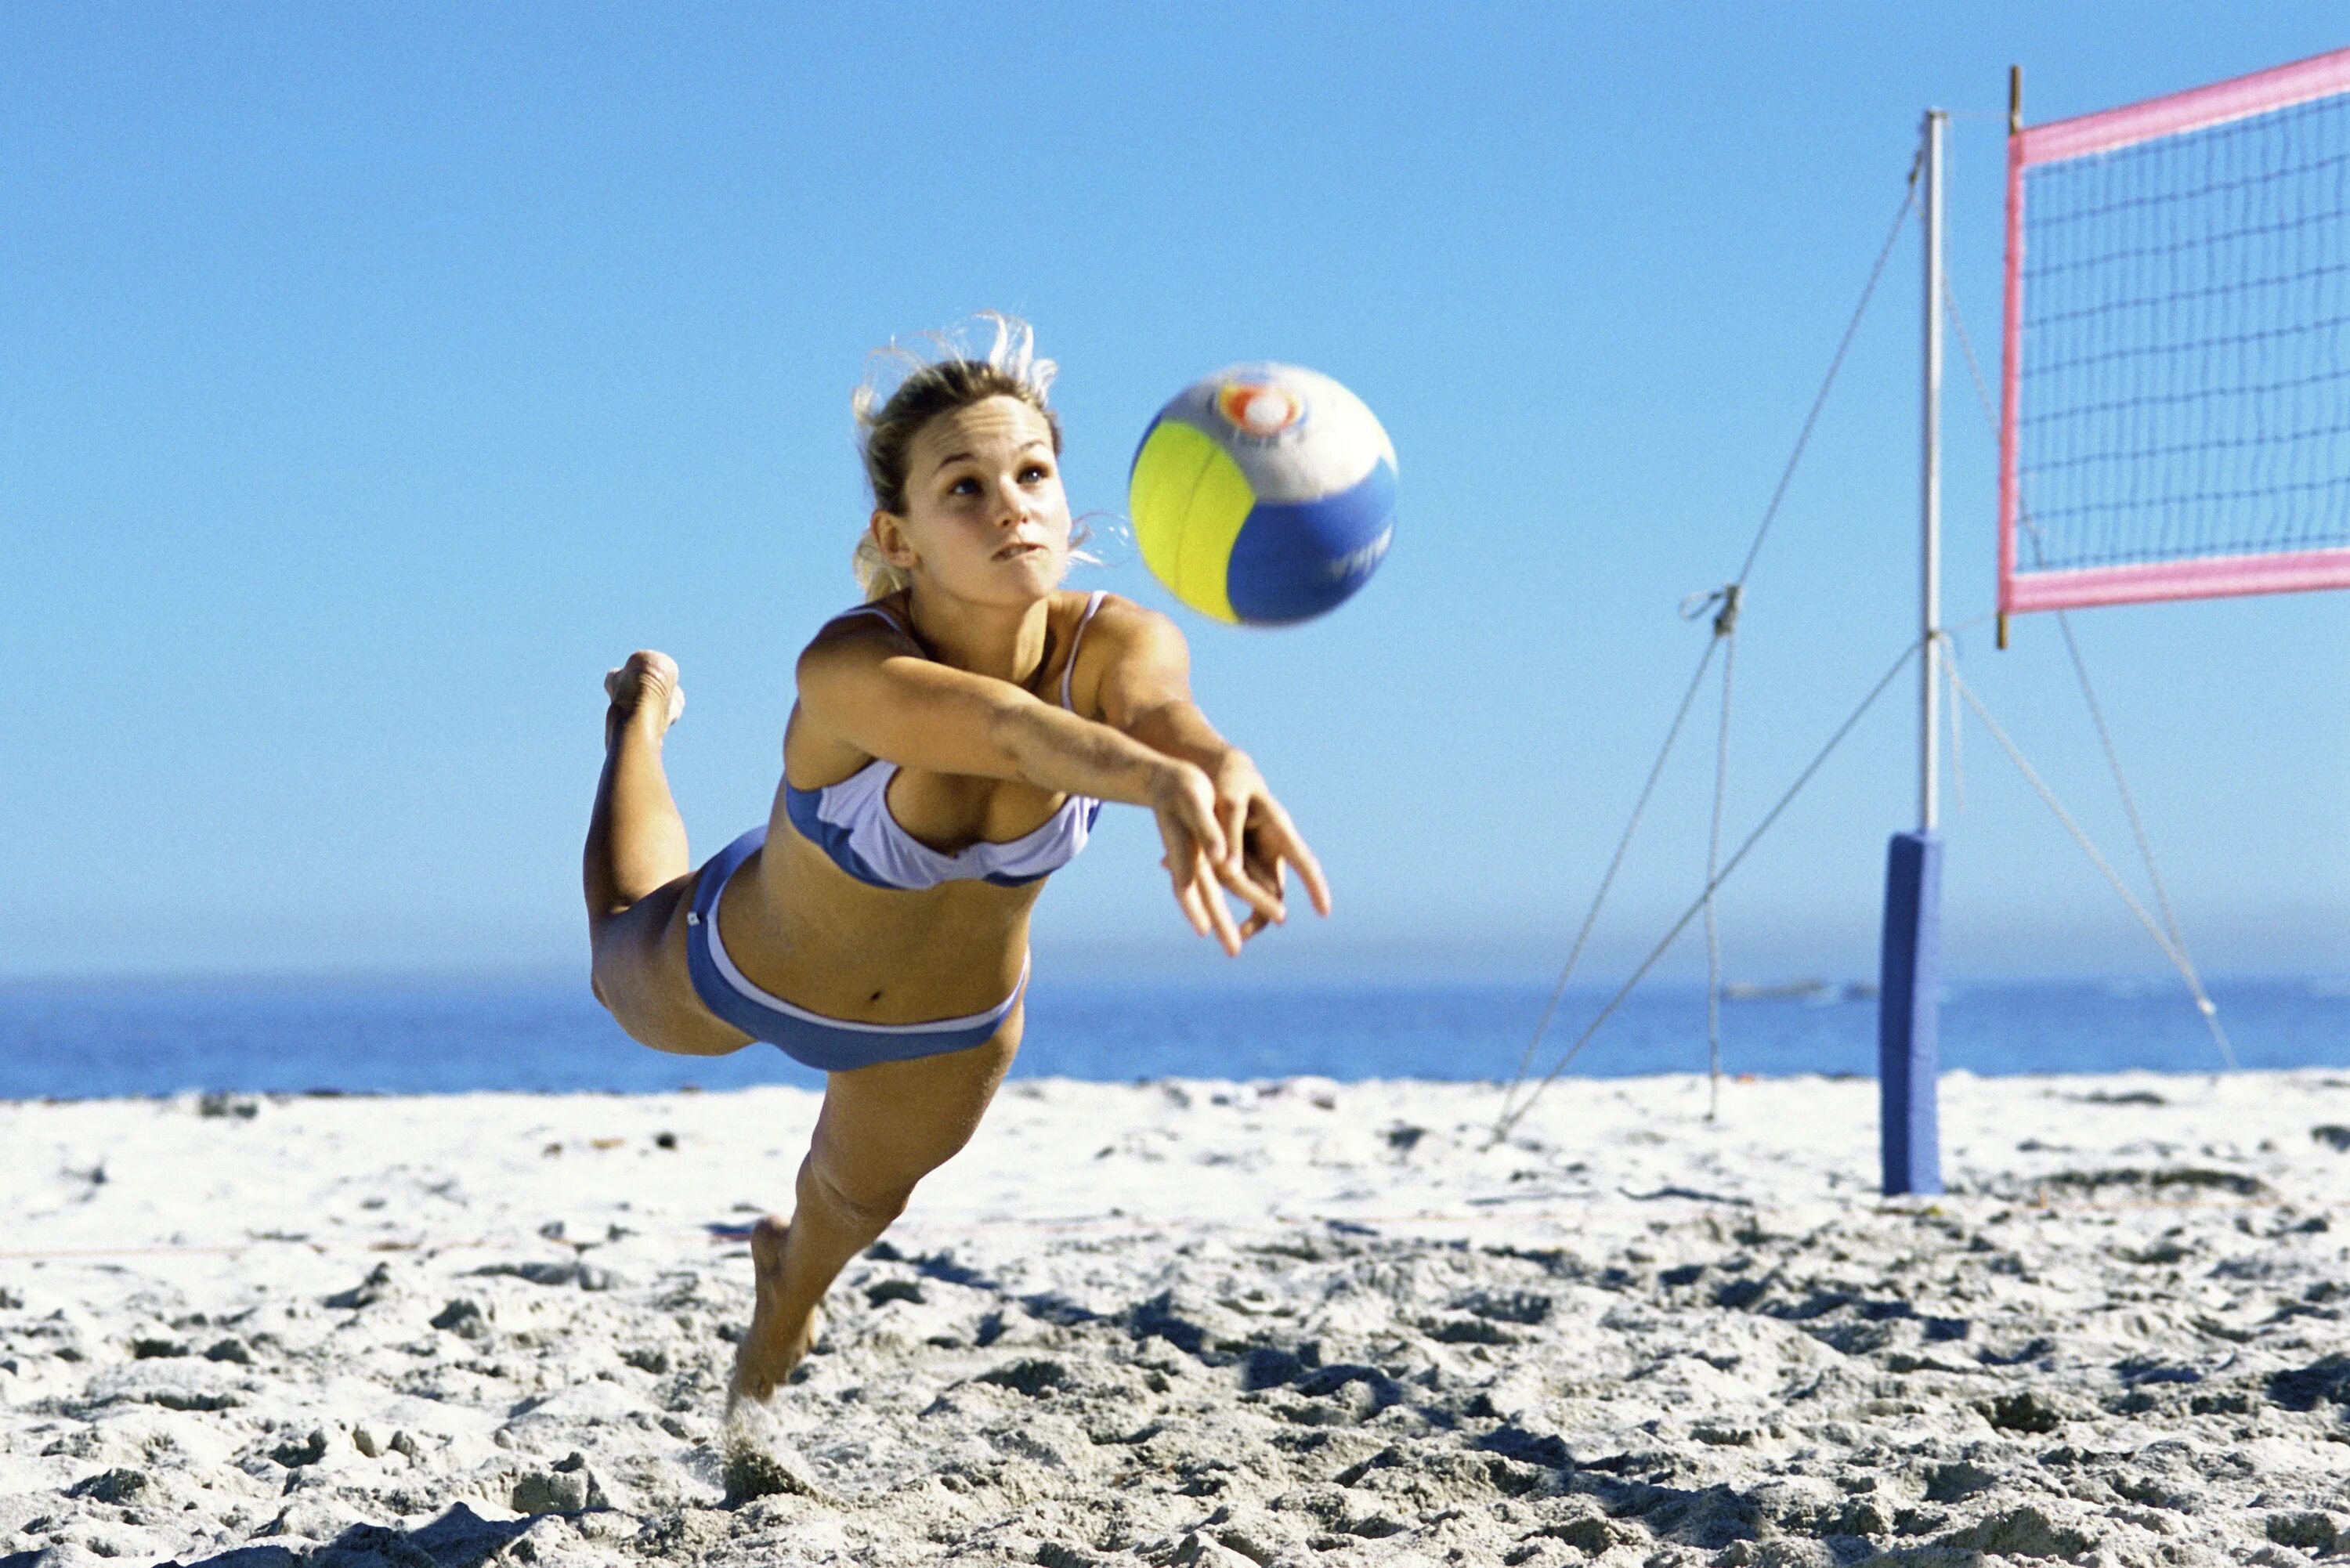 Volley перевод. Пляжный волейбол. Волейбол на пляже. Девушка с волейбольным мячом. Пляжный волейбол картинки.